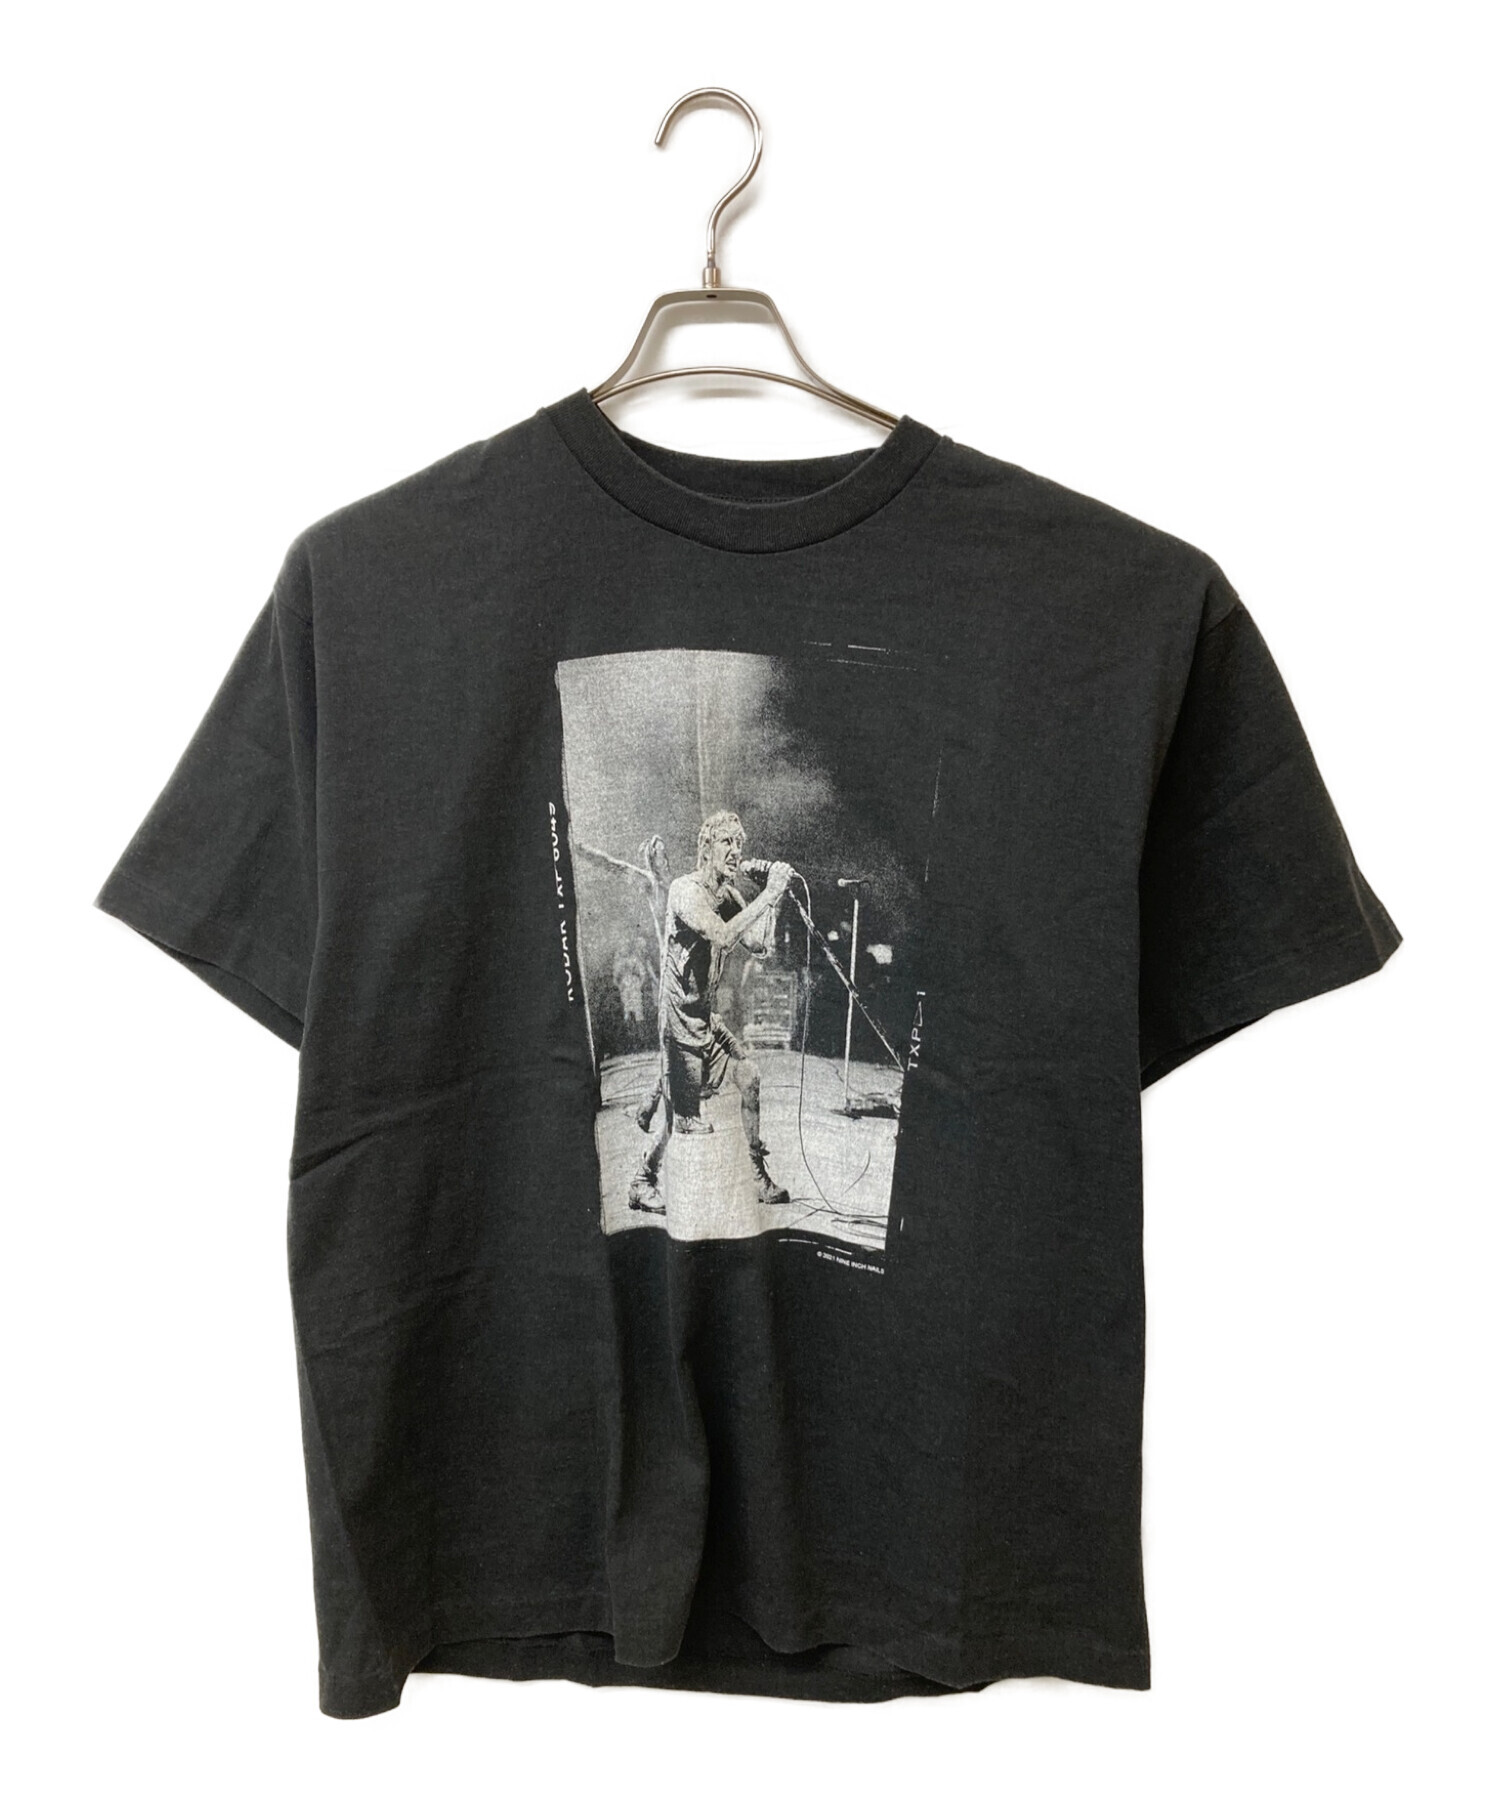 COMOLI (コモリ) NINE INCH NAILS (ナイン・インチ・ネイルズ) TRENT REZNOR LIVE PHOTO T-SHIRT  トレントレズナーフォトTシャツ ブラック サイズ:3 未使用品